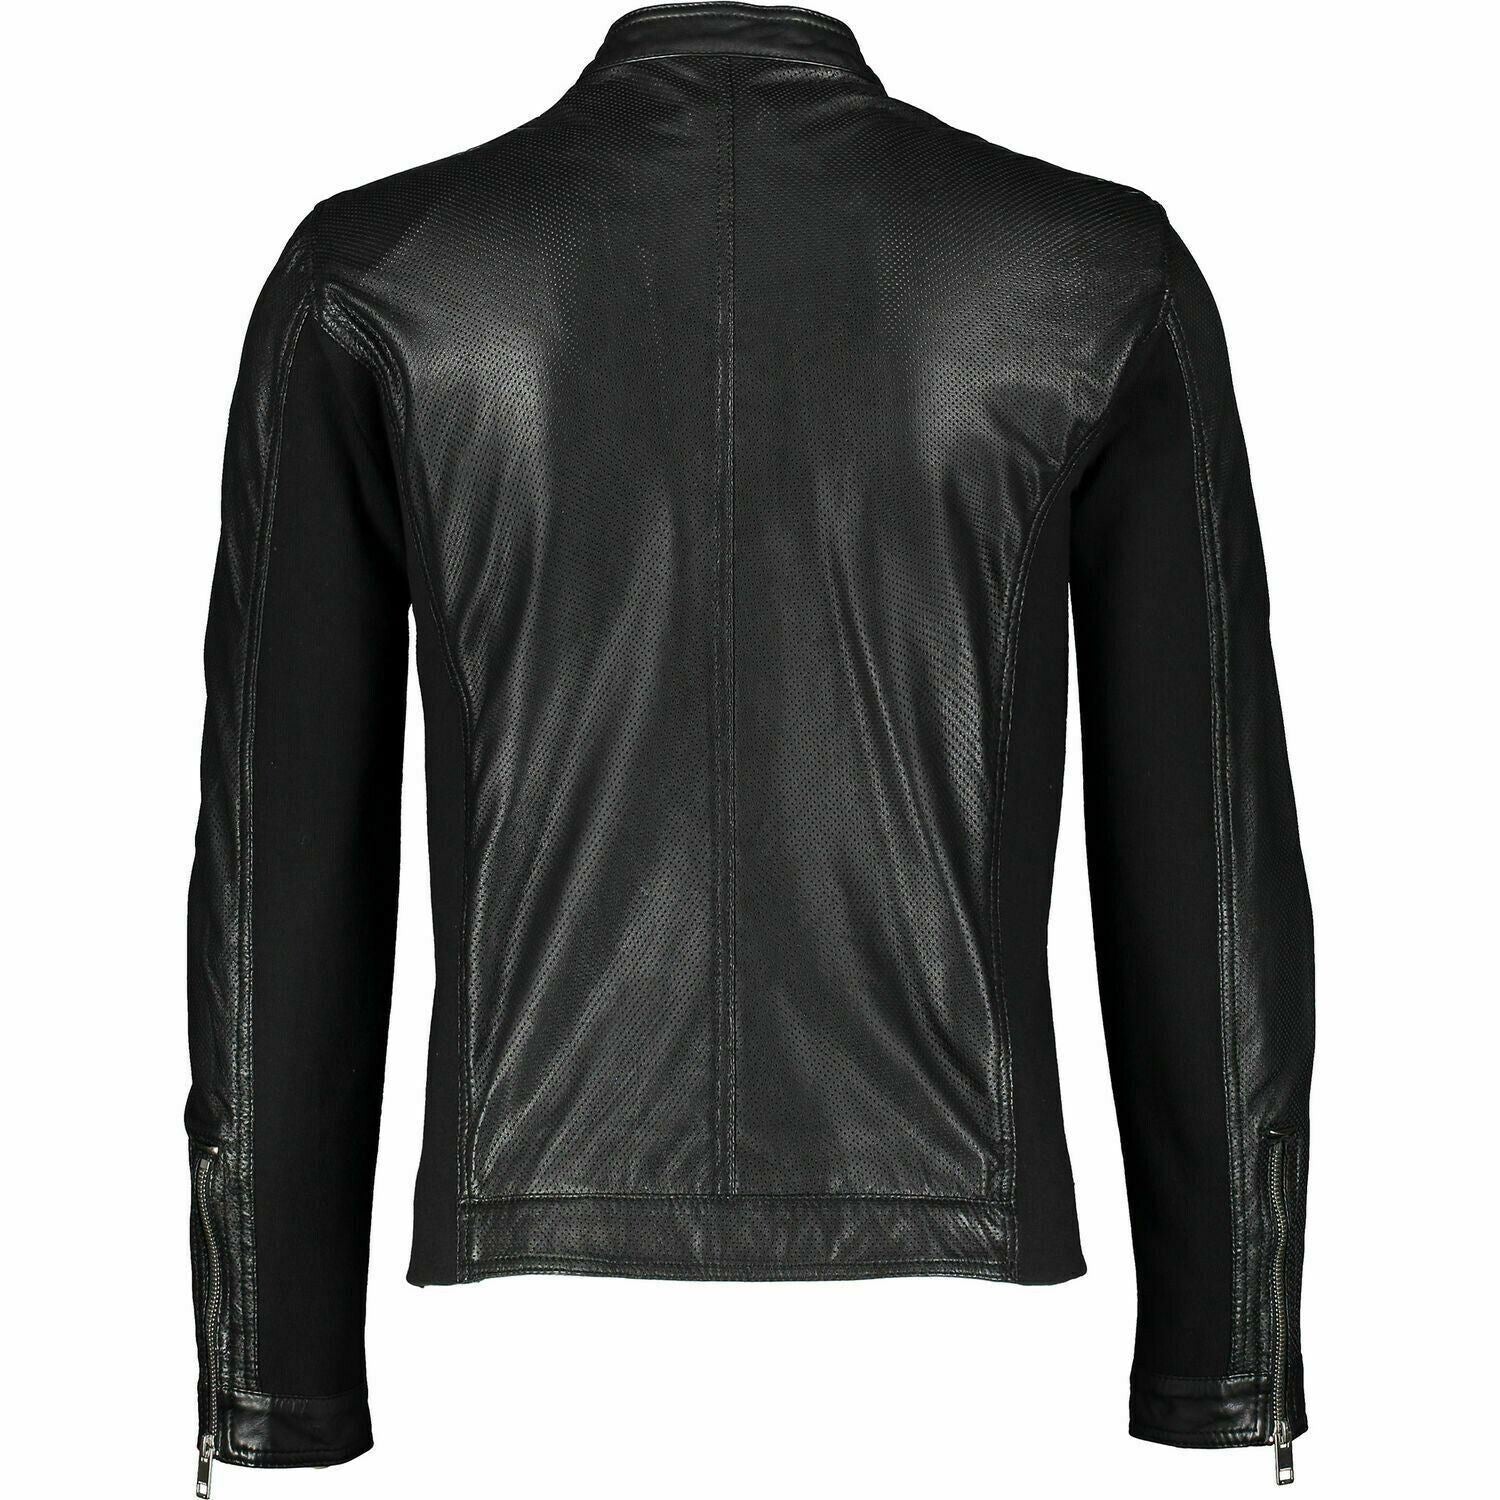 DIESEL Men's FRANKLIN Perforated Leather Jacket, Black, size L